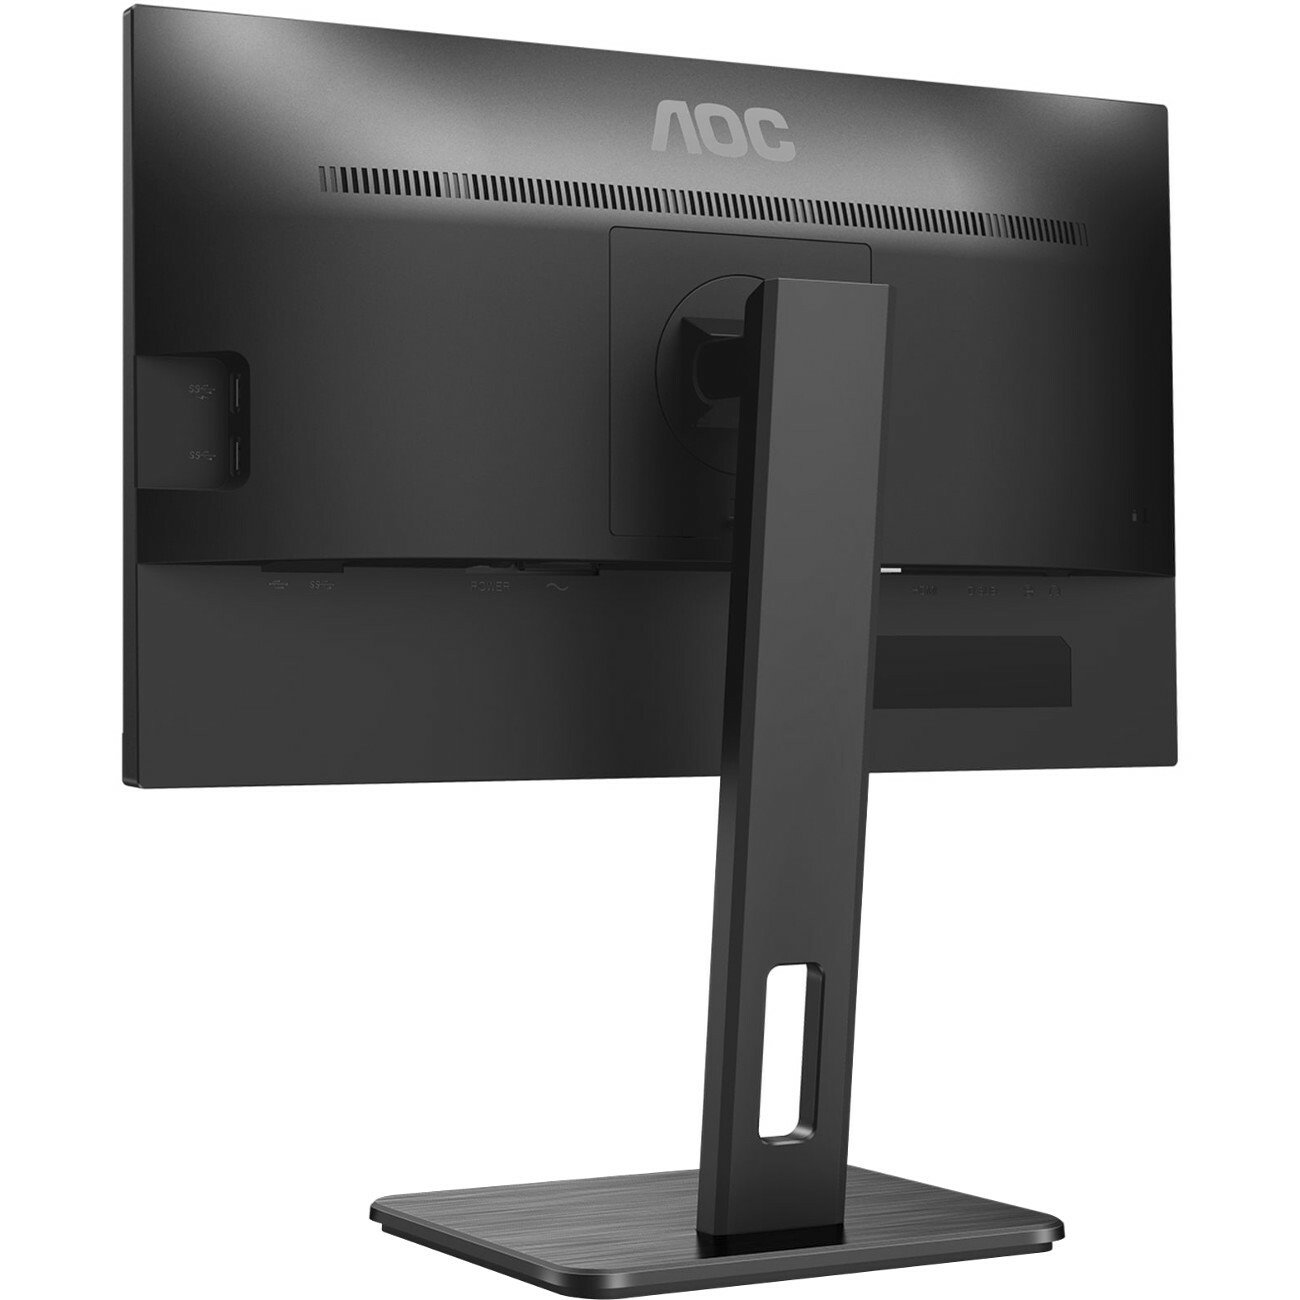 AOC 22P2Q 22" Class Full HD LCD Monitor - 16:9 - Black